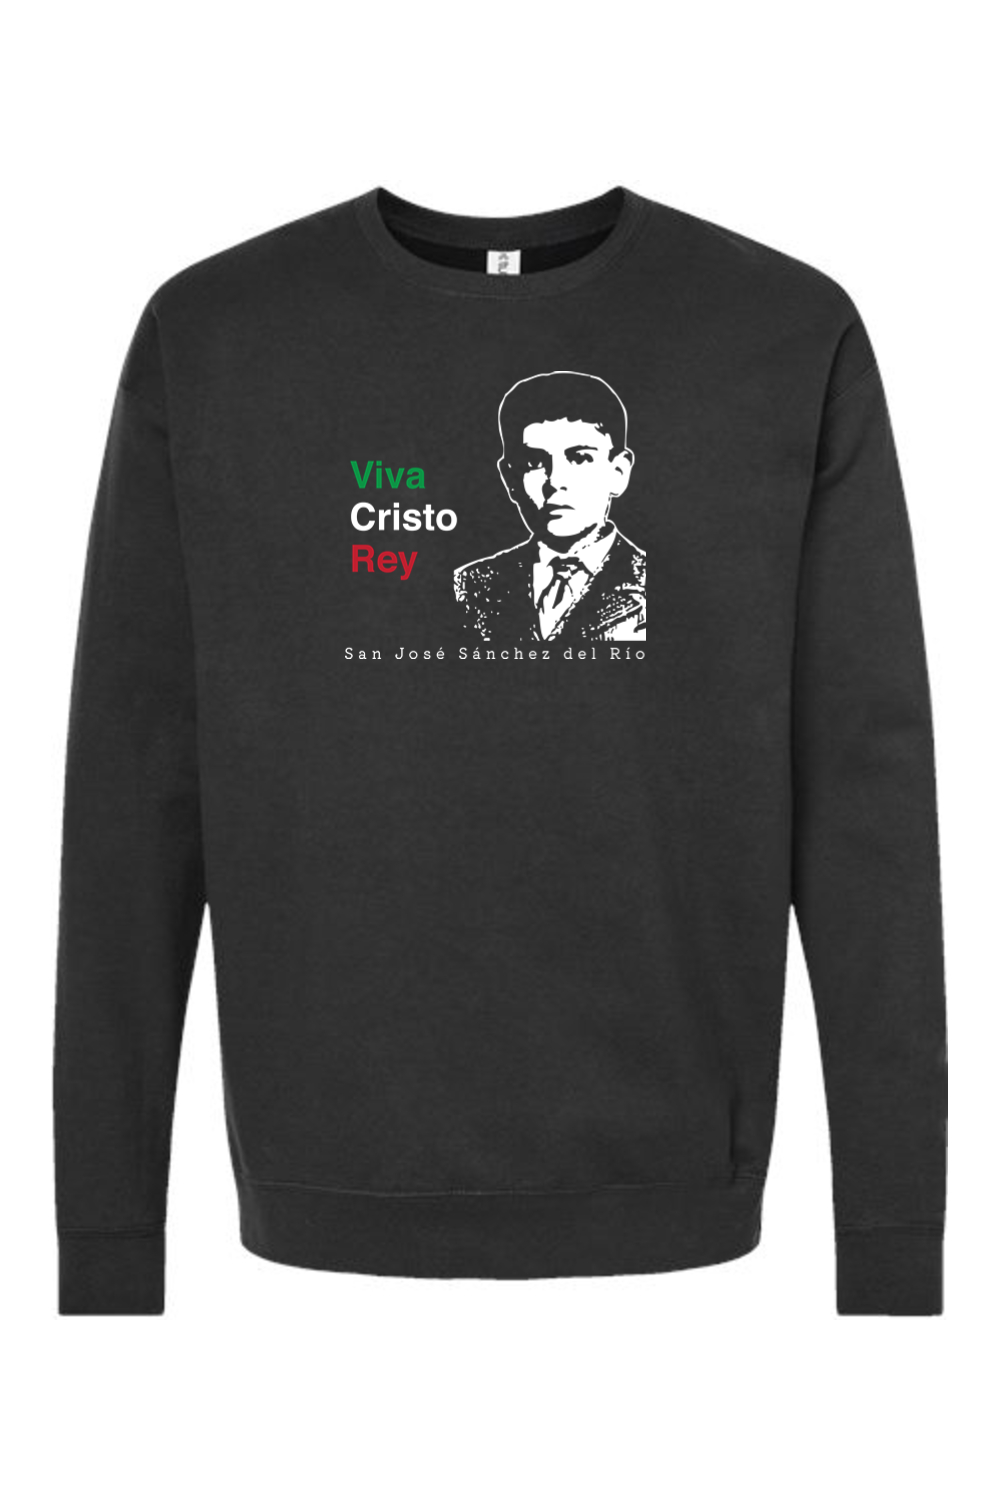 Viva Cristo Rey - St. Jose Sanchez del Rio Crewneck Sweatshirt